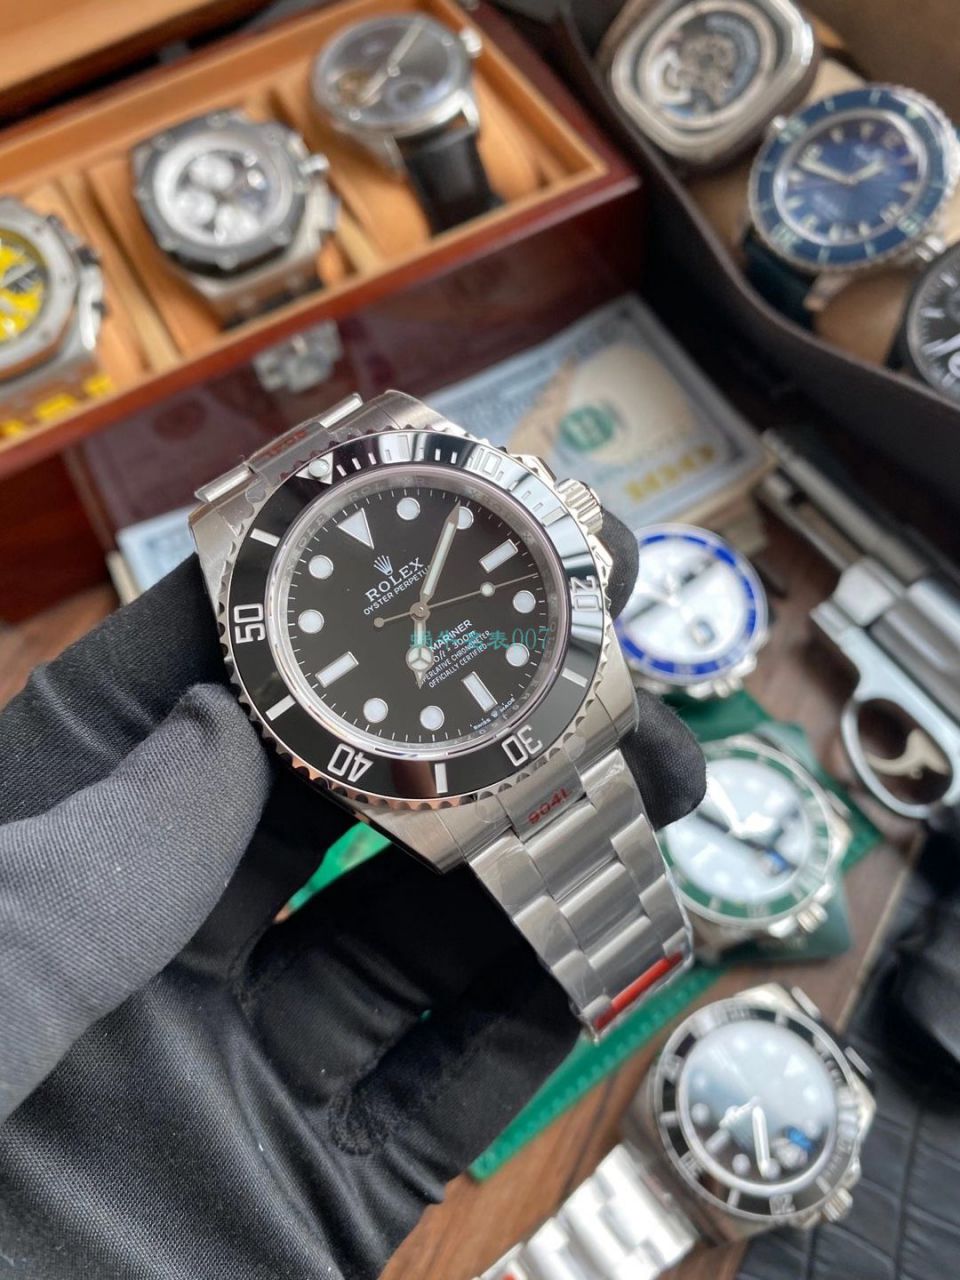 【视频评测】EW厂劳力士新款41无历水鬼超A顶级复刻手表m124060-0001腕表 